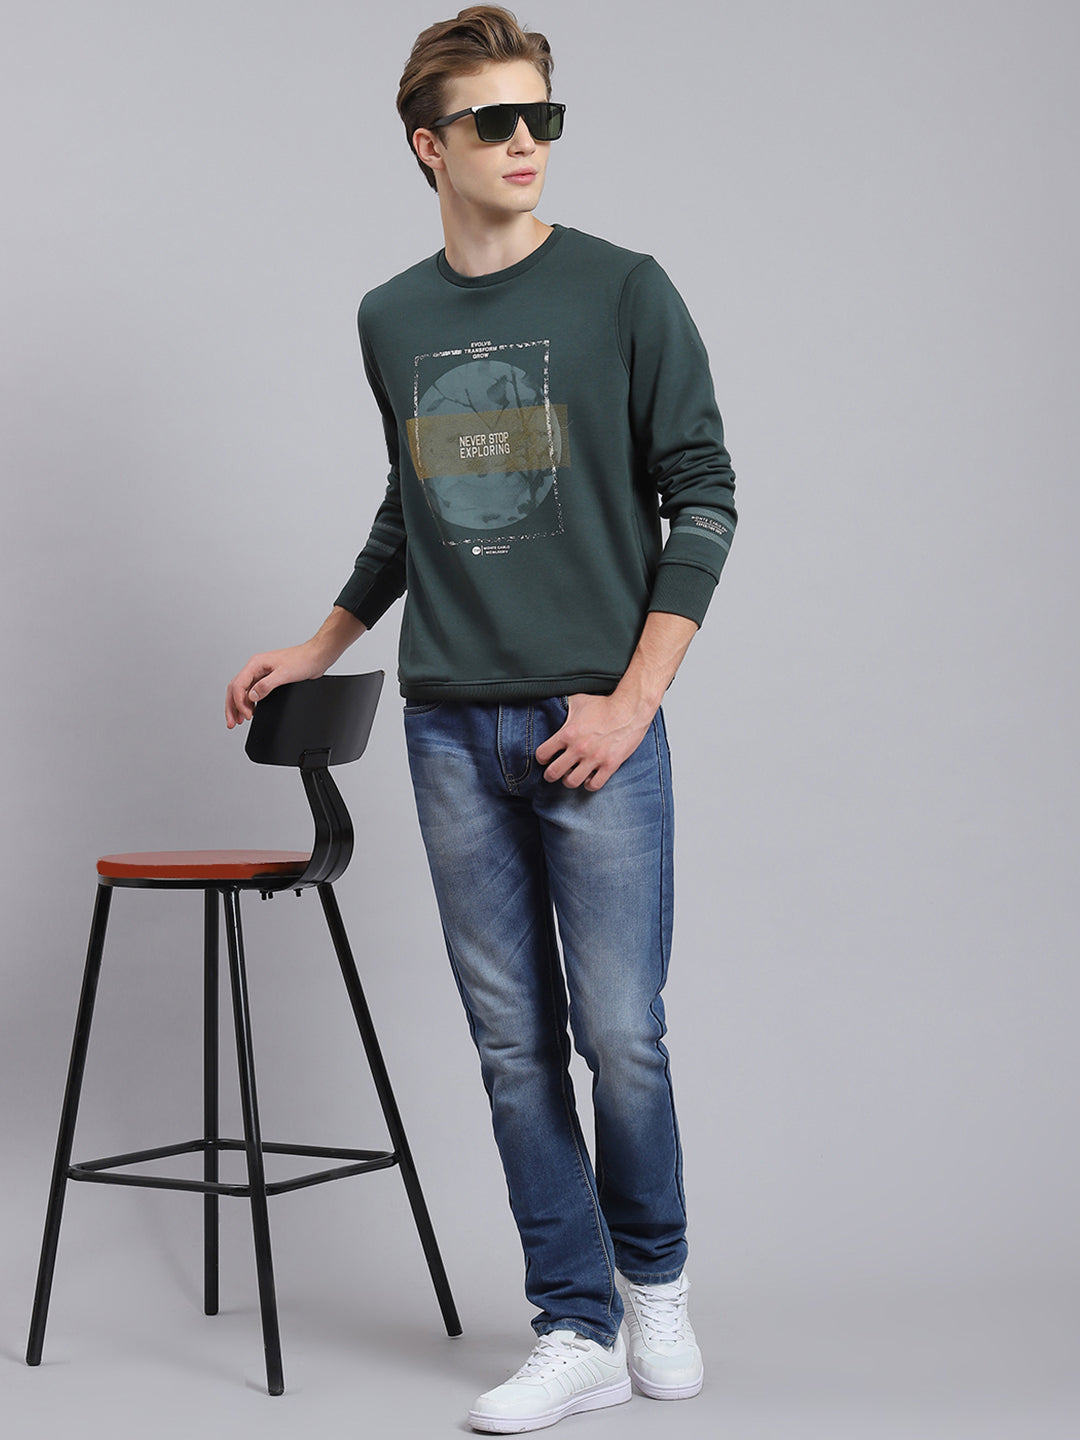 Buy Men Blue Printed Round Neck Full Sleeve Sweatshirts Online in